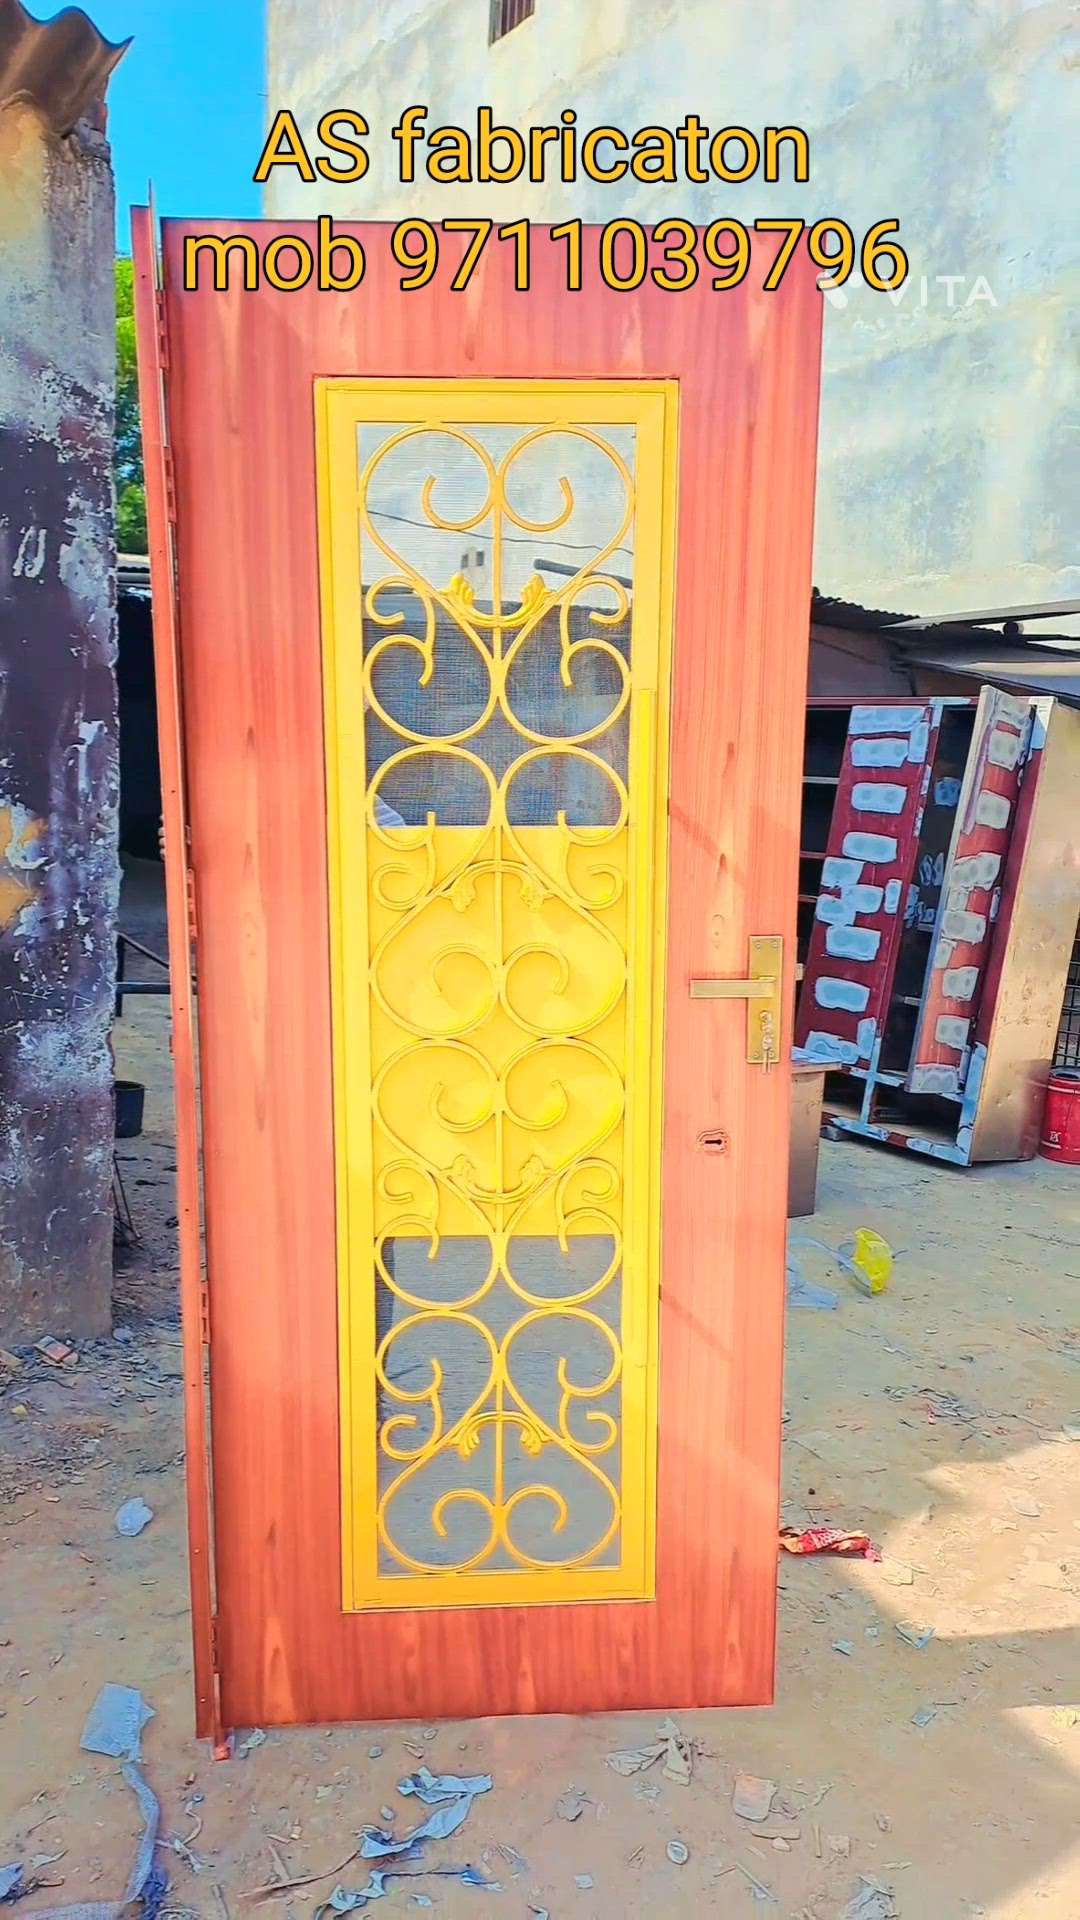 AS fabricaton mob 9711039796 #detail# iron door# double lock #mosquito net#wooden Golden paint#door